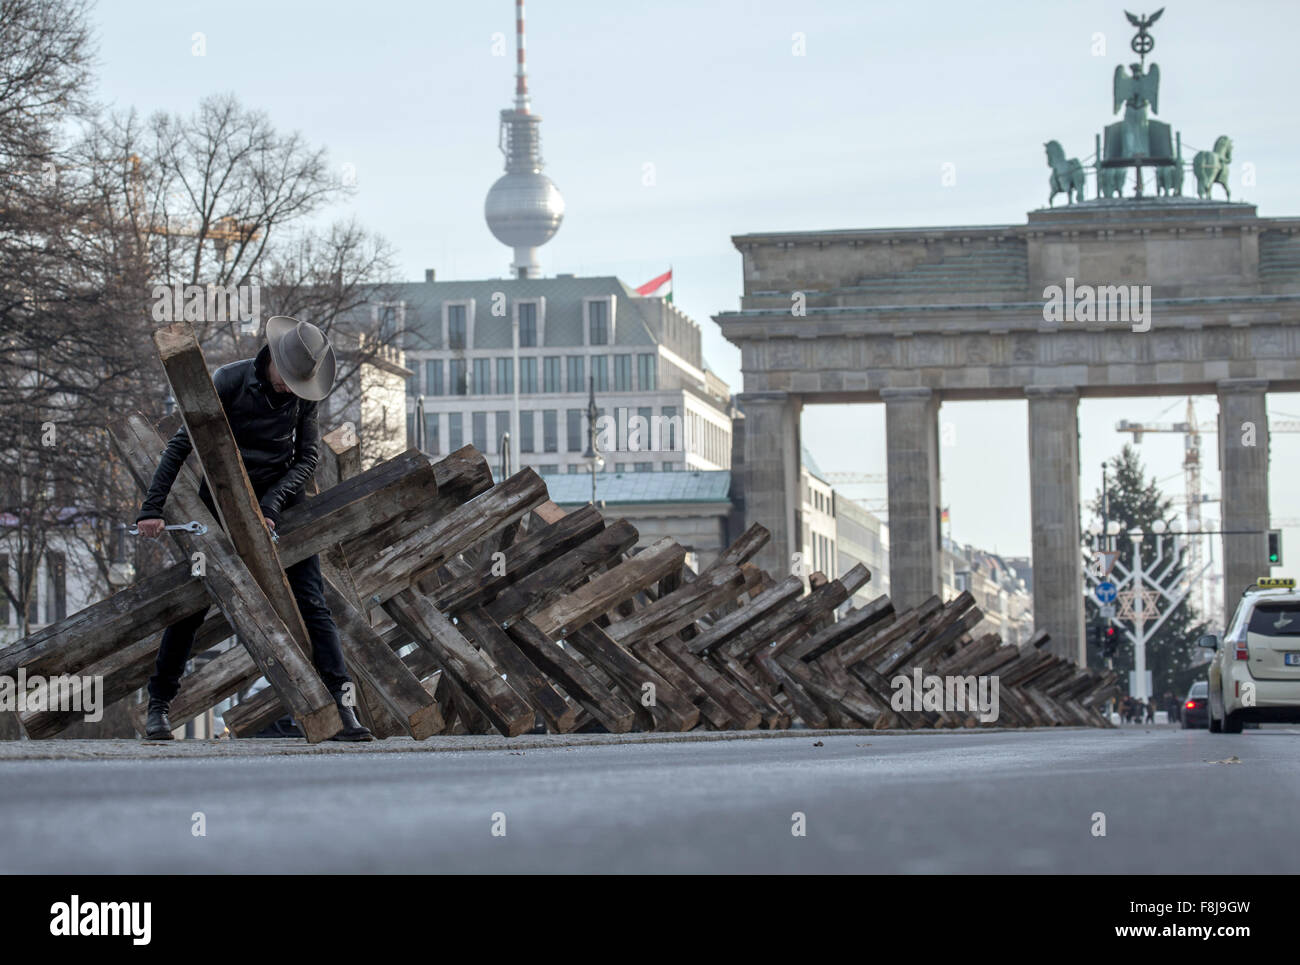 Berlin, Allemagne. Dec 10, 2015. Dafne artiste B est à son installation en bois composé de 50 obstacles antichars positionnés sur un bourrelet central d'une rue, avec la porte de Brandebourg (R) et la tour de télévision (L), représenté à l'arrière-plan, à Berlin, Allemagne, 10 décembre 2015. L'artiste a l'intention de traiter les blocs mentale à travers son art installation 'X Die Sperre im Kopf X' (lit. X La barrière dans la tête X) sur la Journée des droits de l'homme. Photo : MICHAEL KAPPELER/dpa/Alamy Live News Banque D'Images